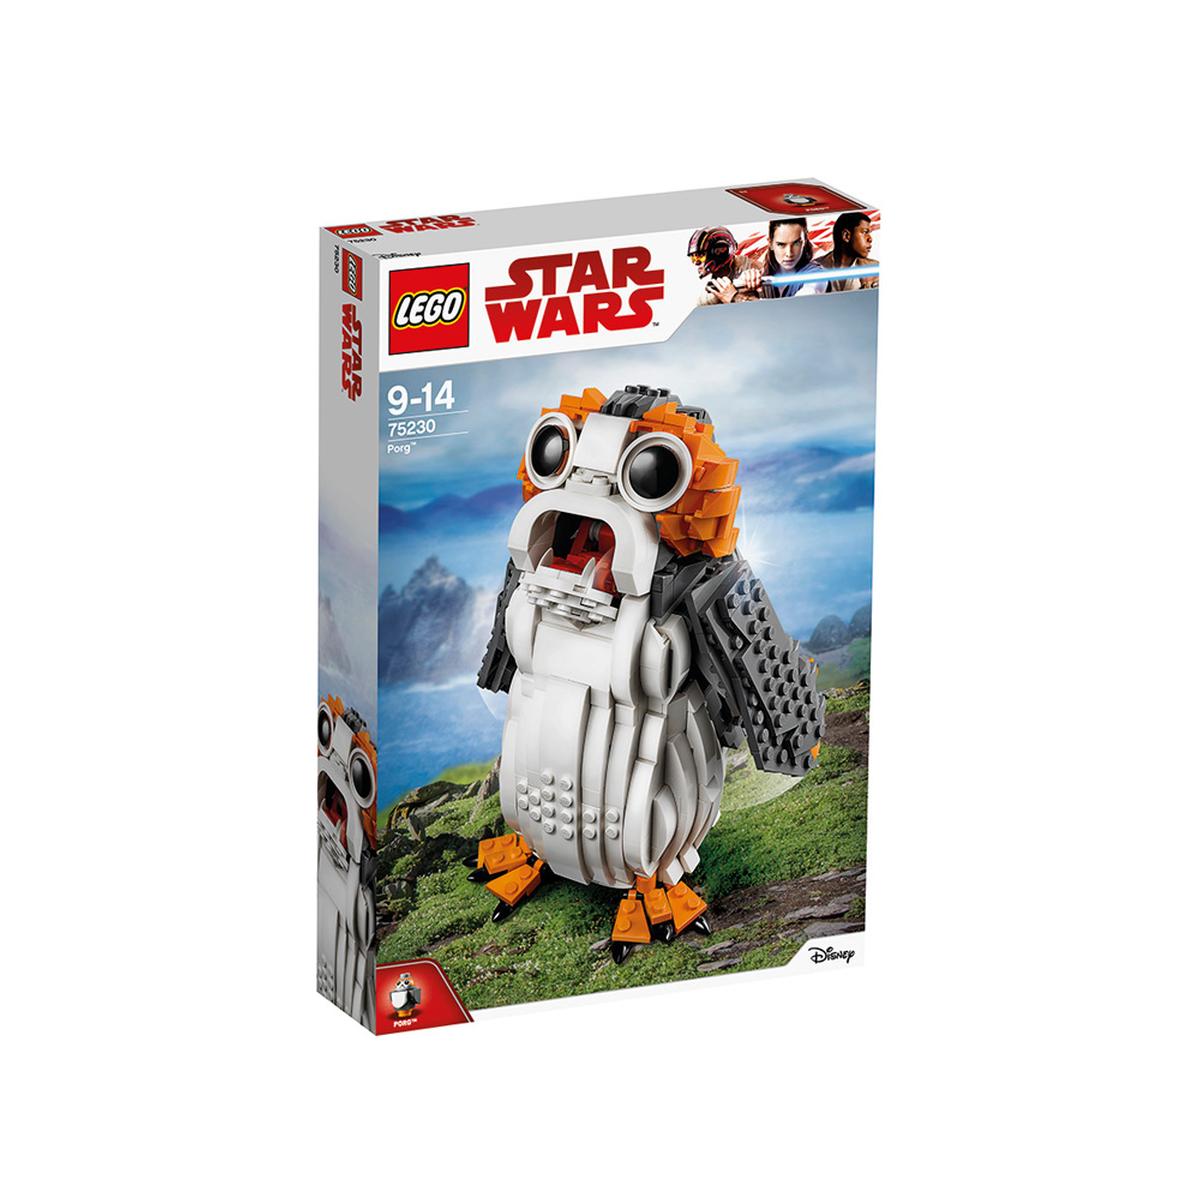 LEGO Star Wars - Porg - 75230 | Lego Star Wars | Toys"R"Us España